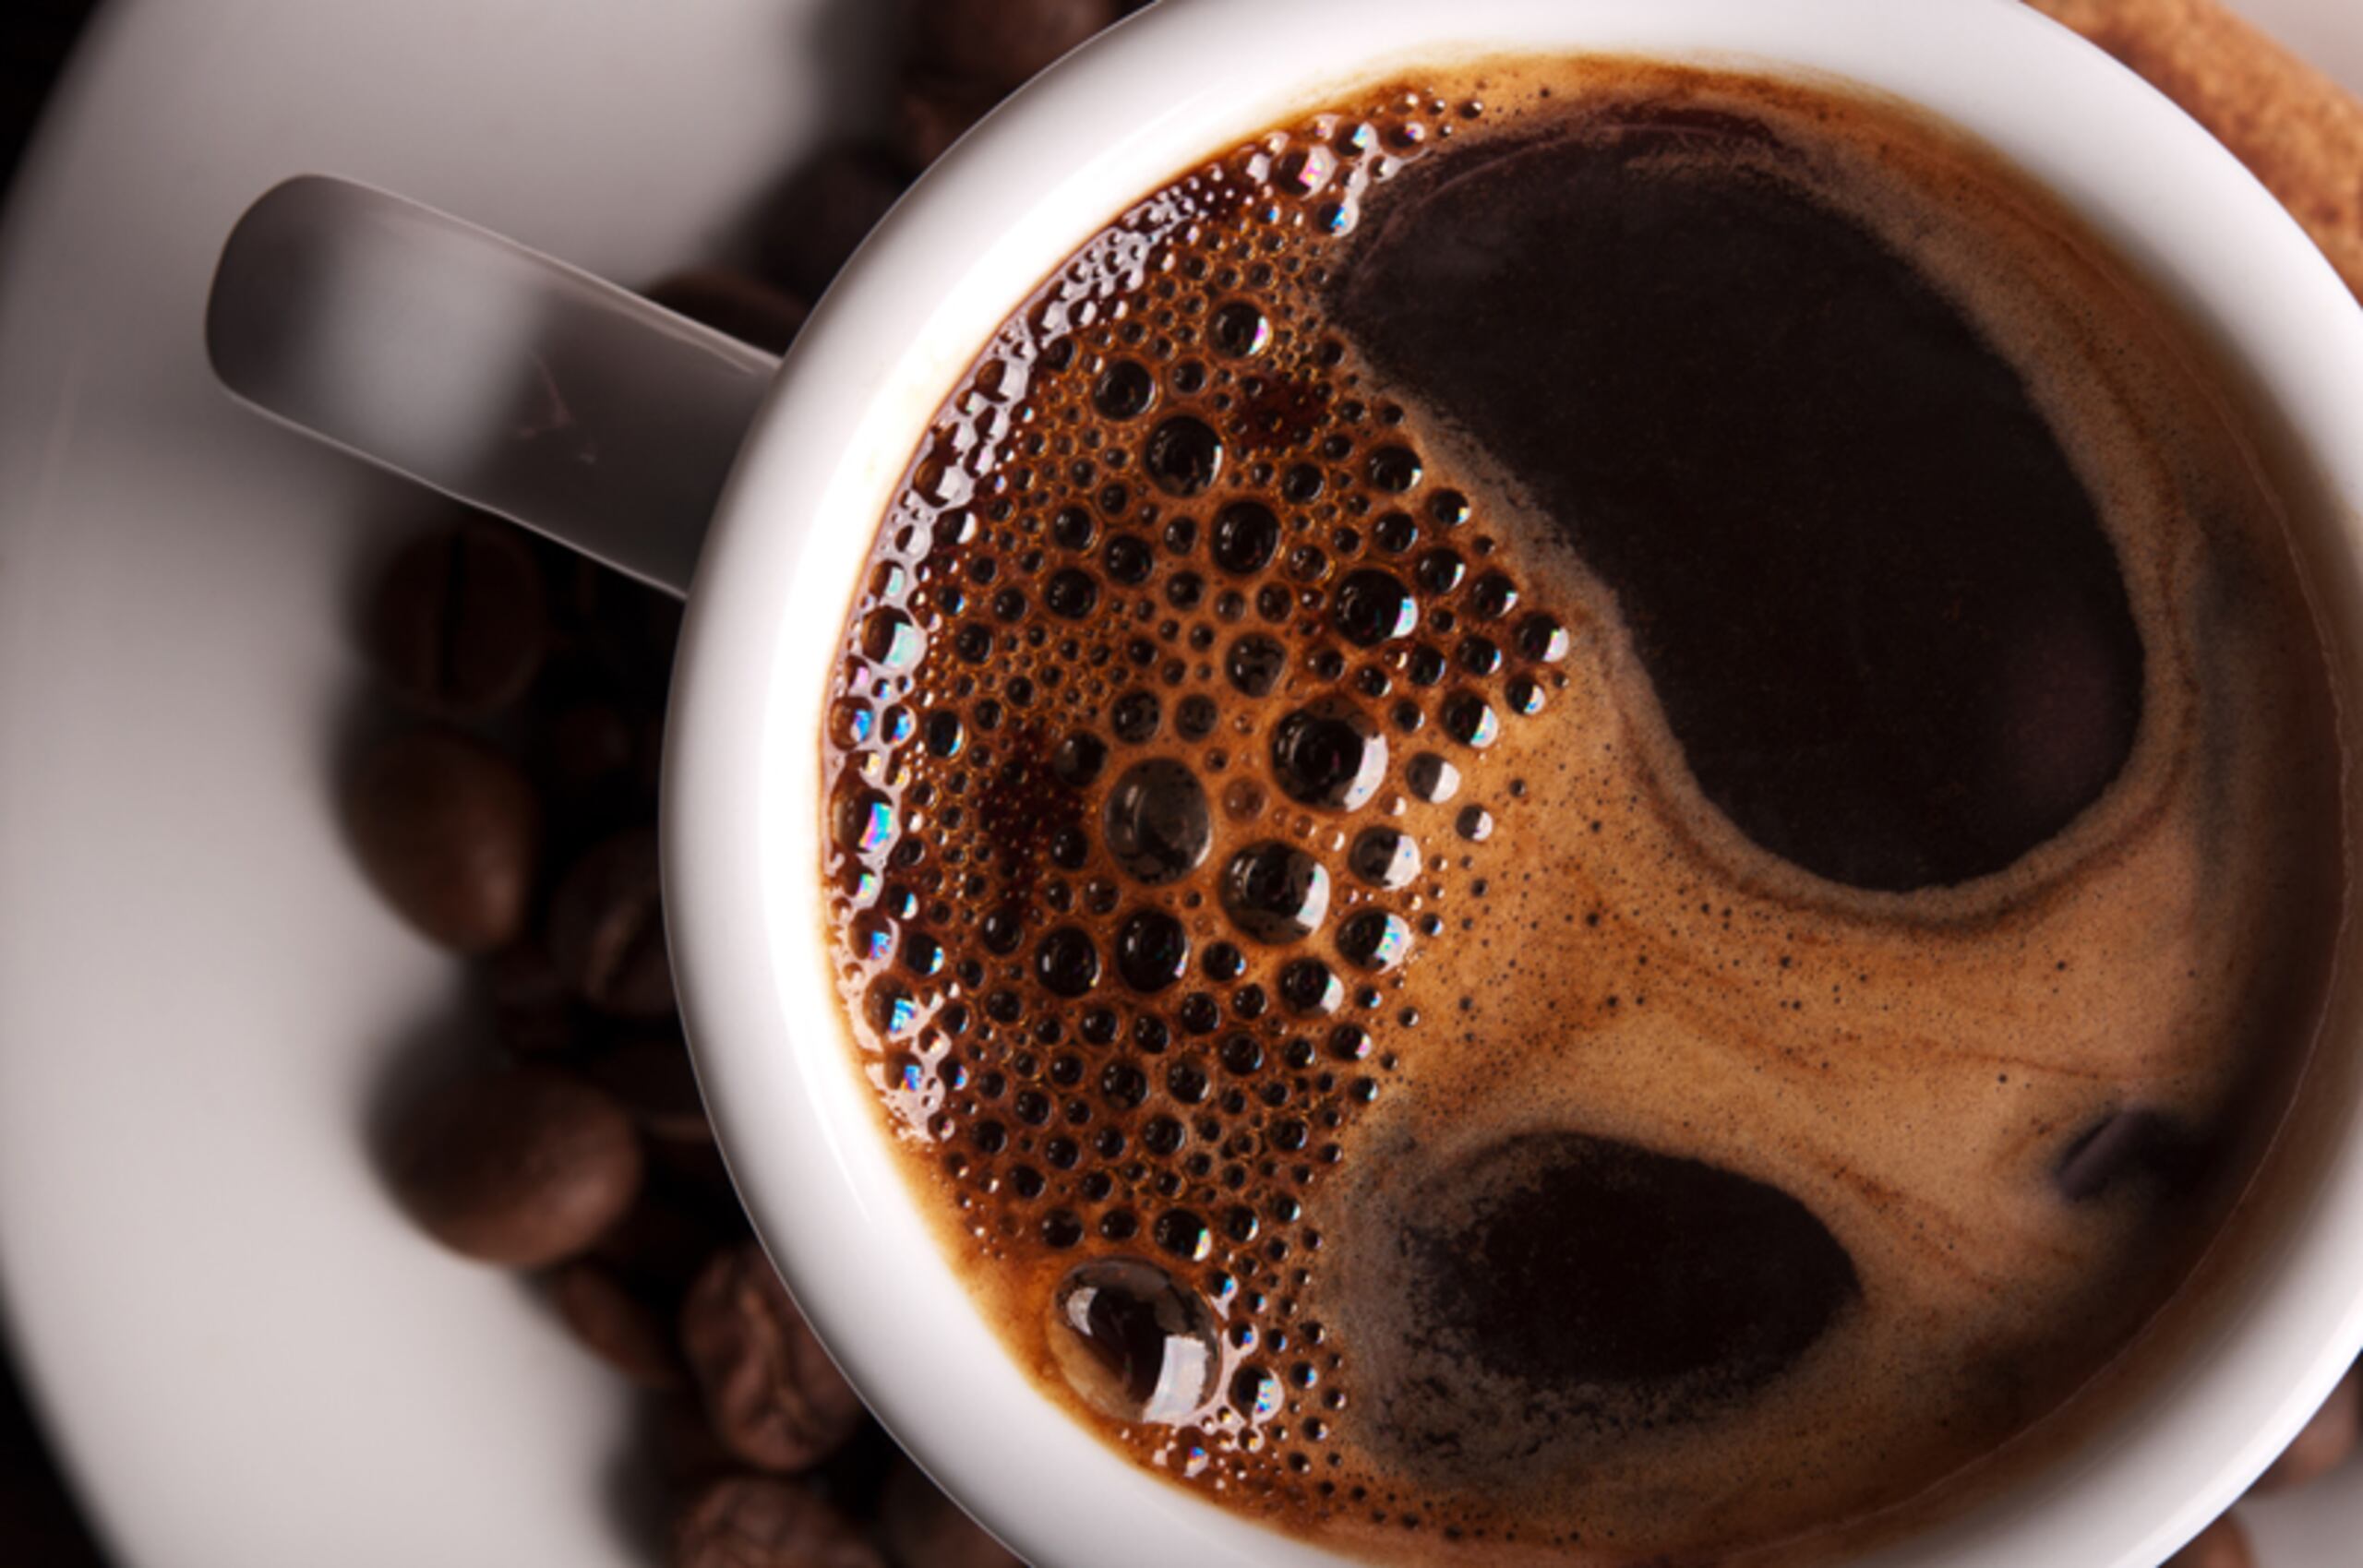 La cafeína es un estimulante que tiene un efecto rápido en el sistema nervioso central, puede incrementar la presión arterial y el ritmo cardíaco, proporcionar un aumento de energía y mejorar el estado de ánimo en general.